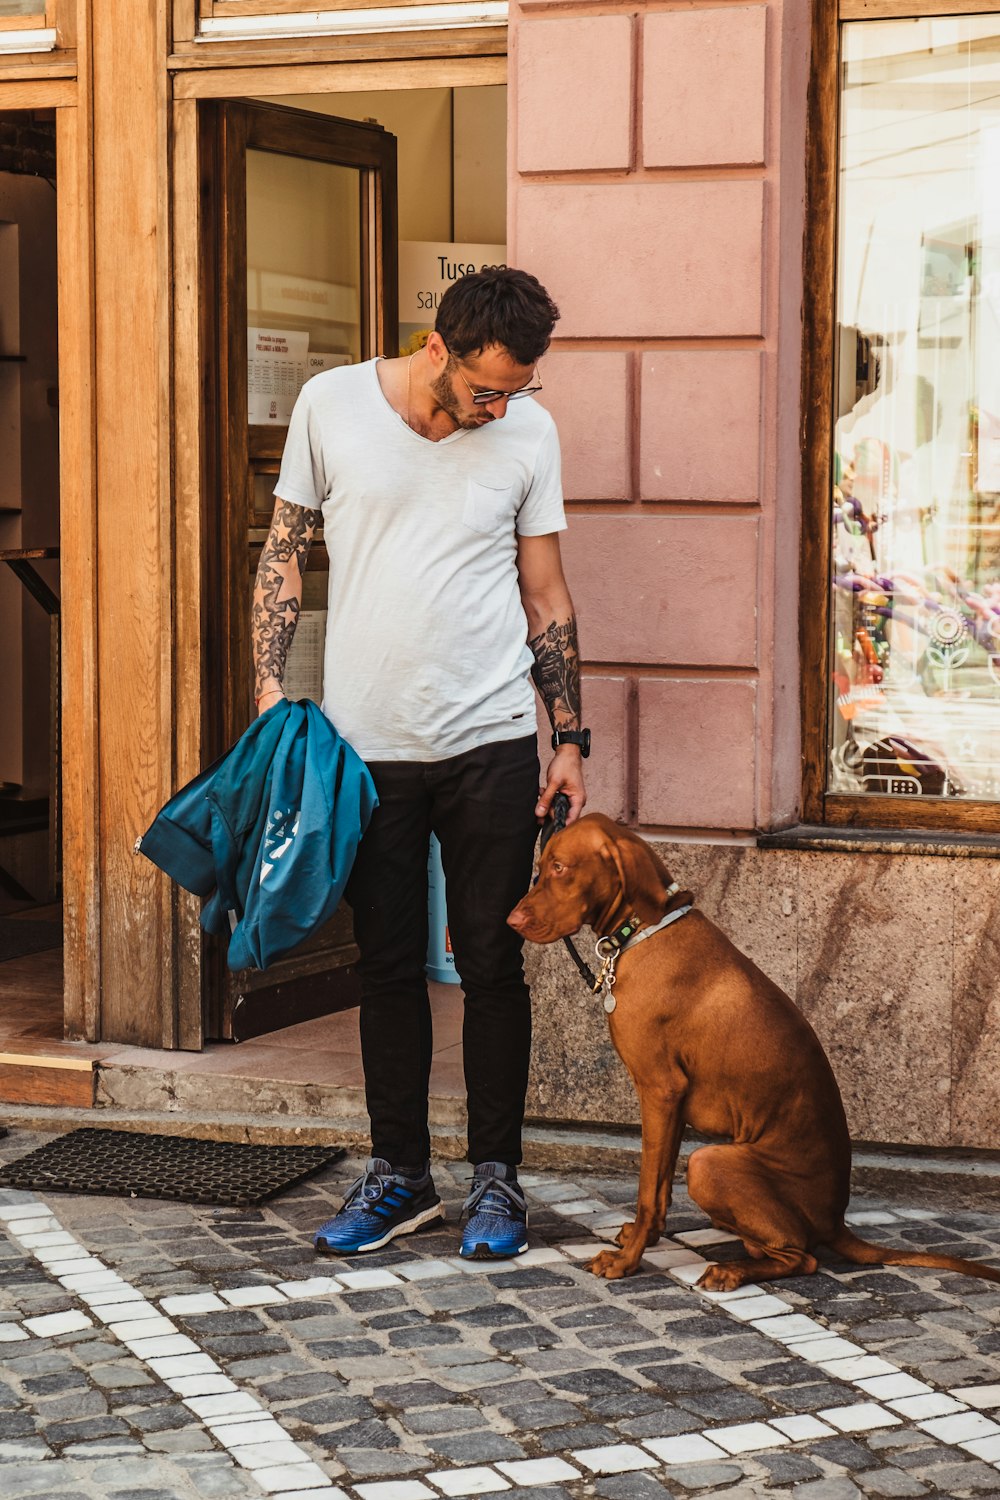 man standing beside sitting dog near open door of building